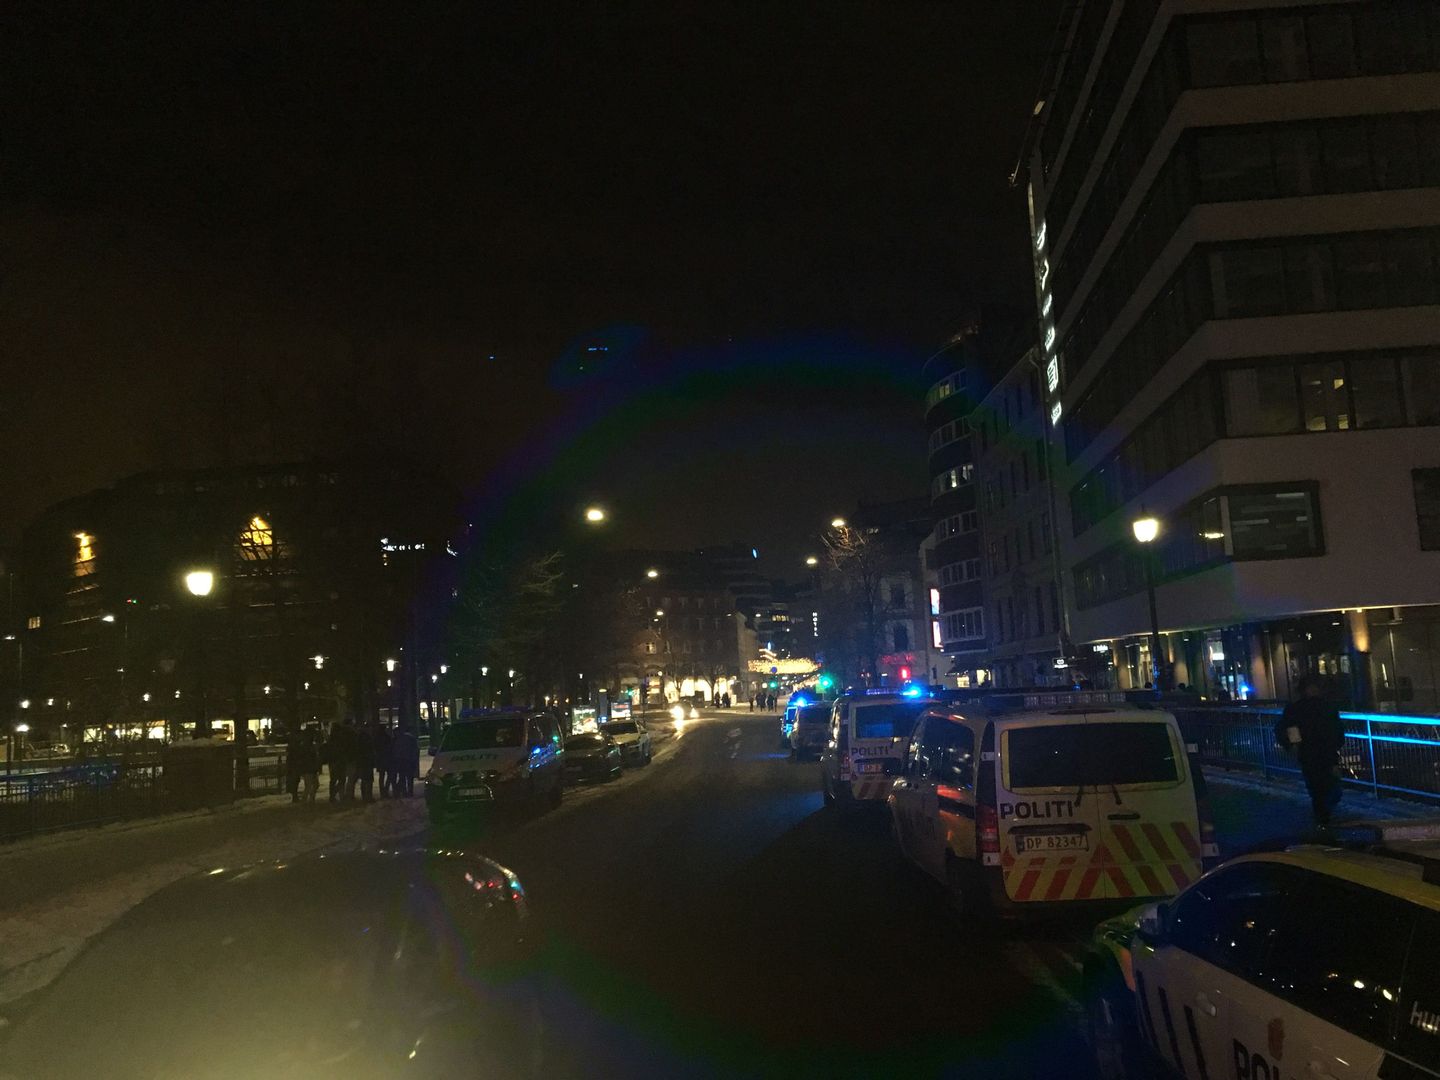 Bråk på 37-bussen i Oslo, 11 personer pågrepet